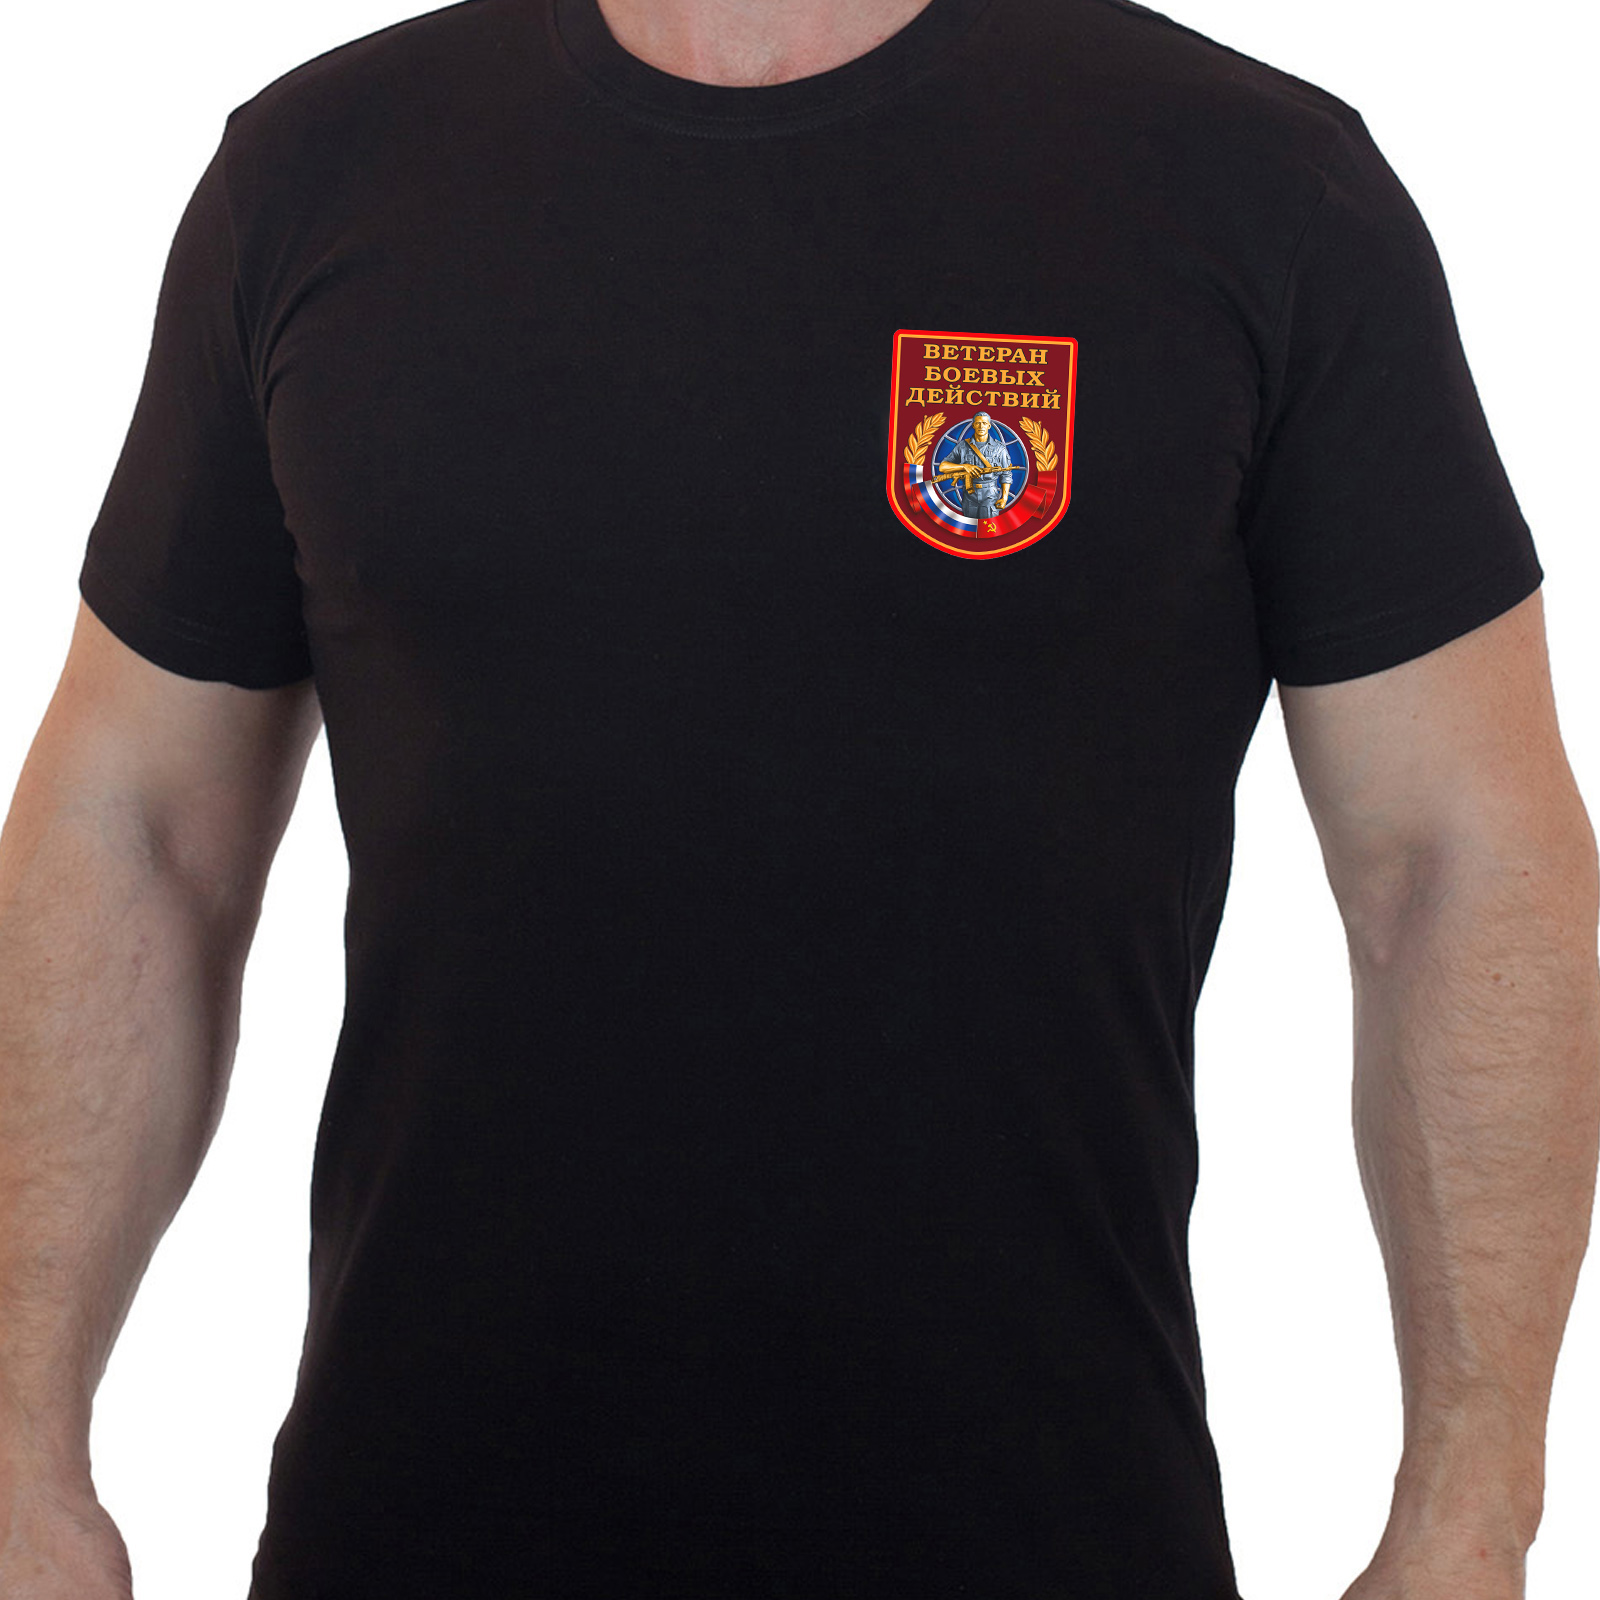 Чёрная футболка "Ветеран боевых действий"